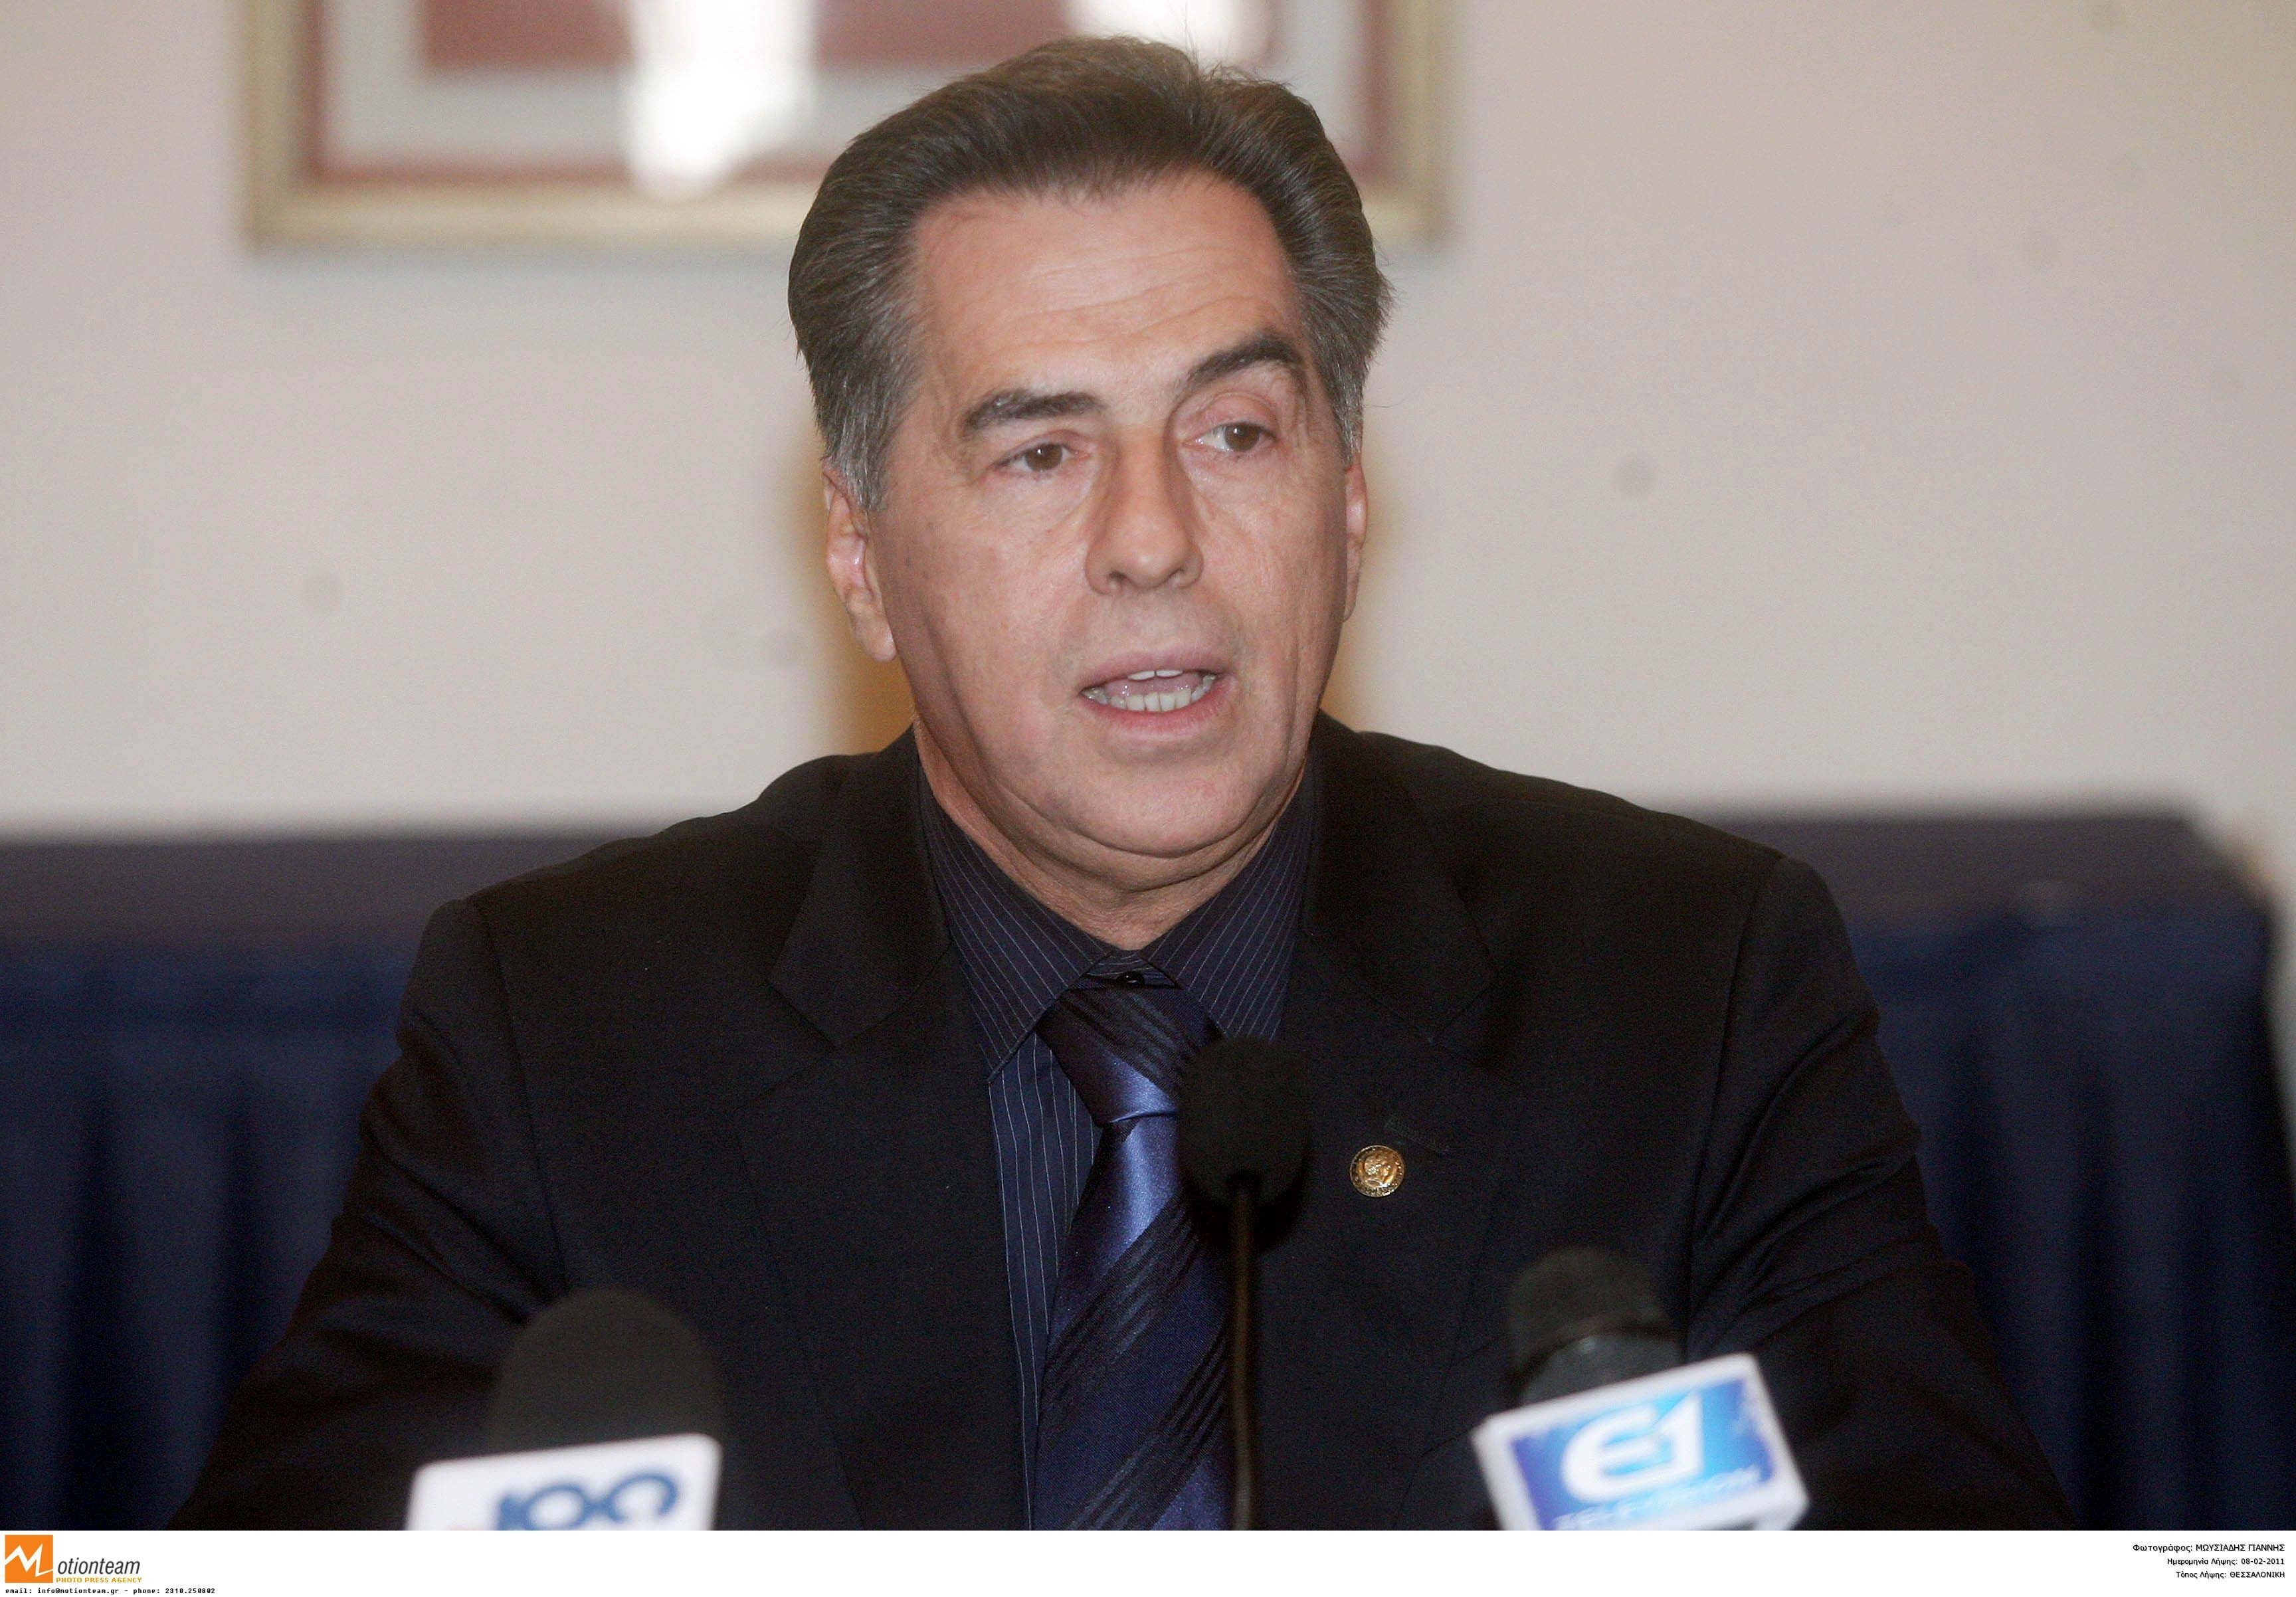 Παπαγεωργόπουλος για την εμπλοκή του στην υπαιξέρεση: “Τρέφω εμπιστοσύνη στη δικαιοσύνη”